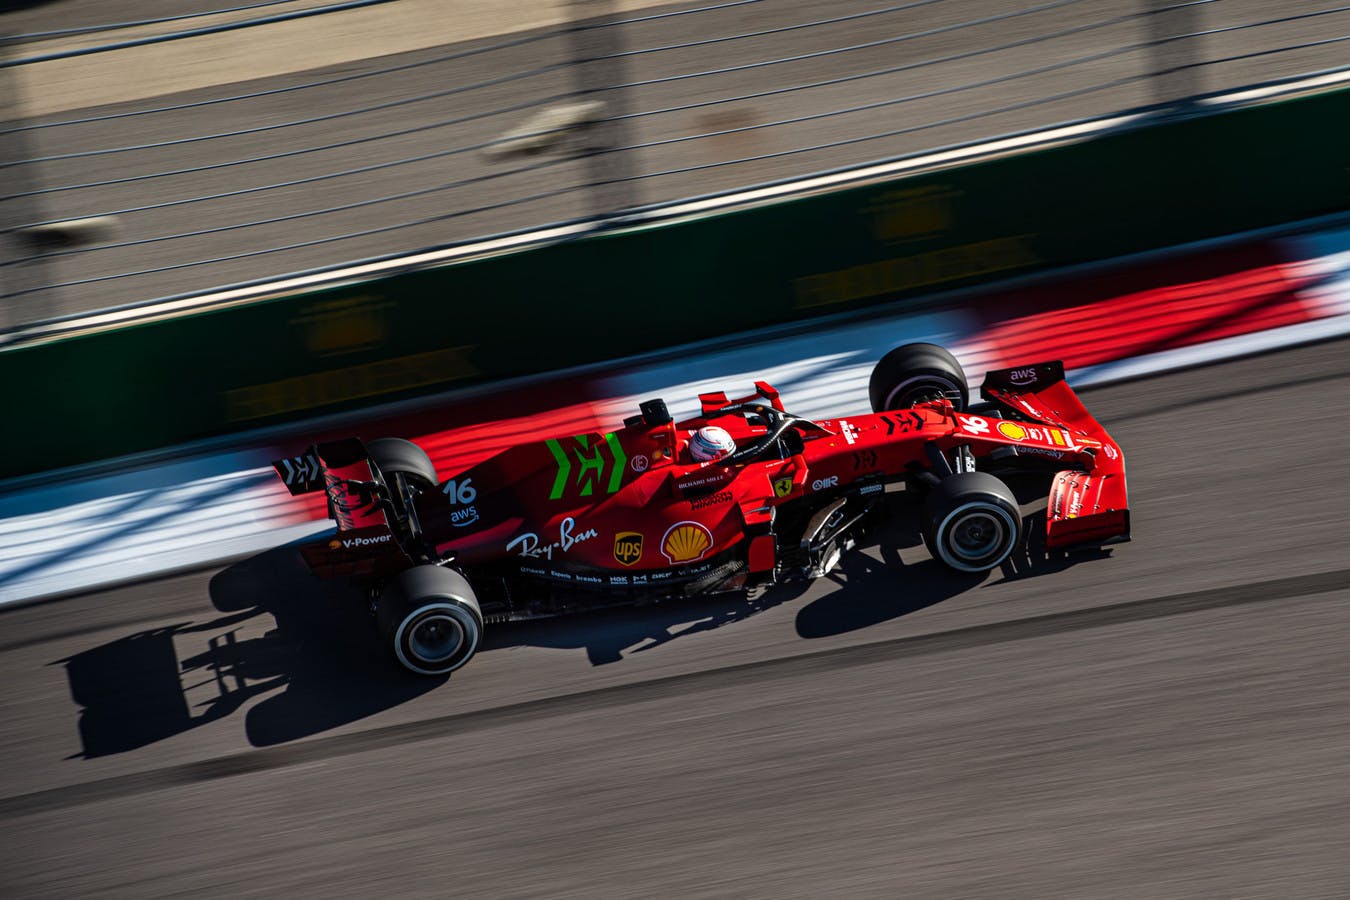 Ferrari deklaruje poprawę osiągów ulepszonego silnika